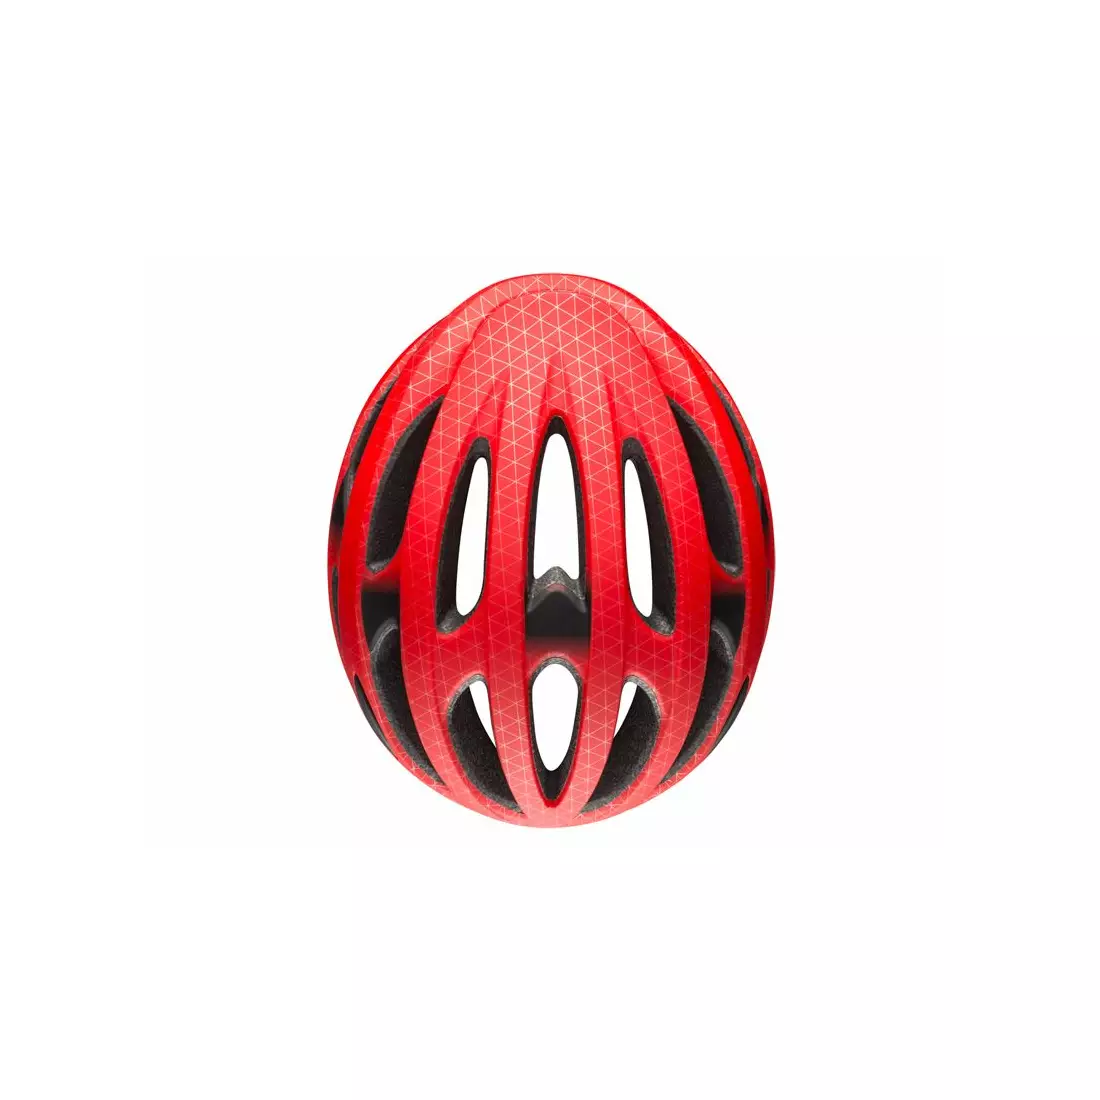 BELL FORMULA országúti kerékpáros sisak, matte red black